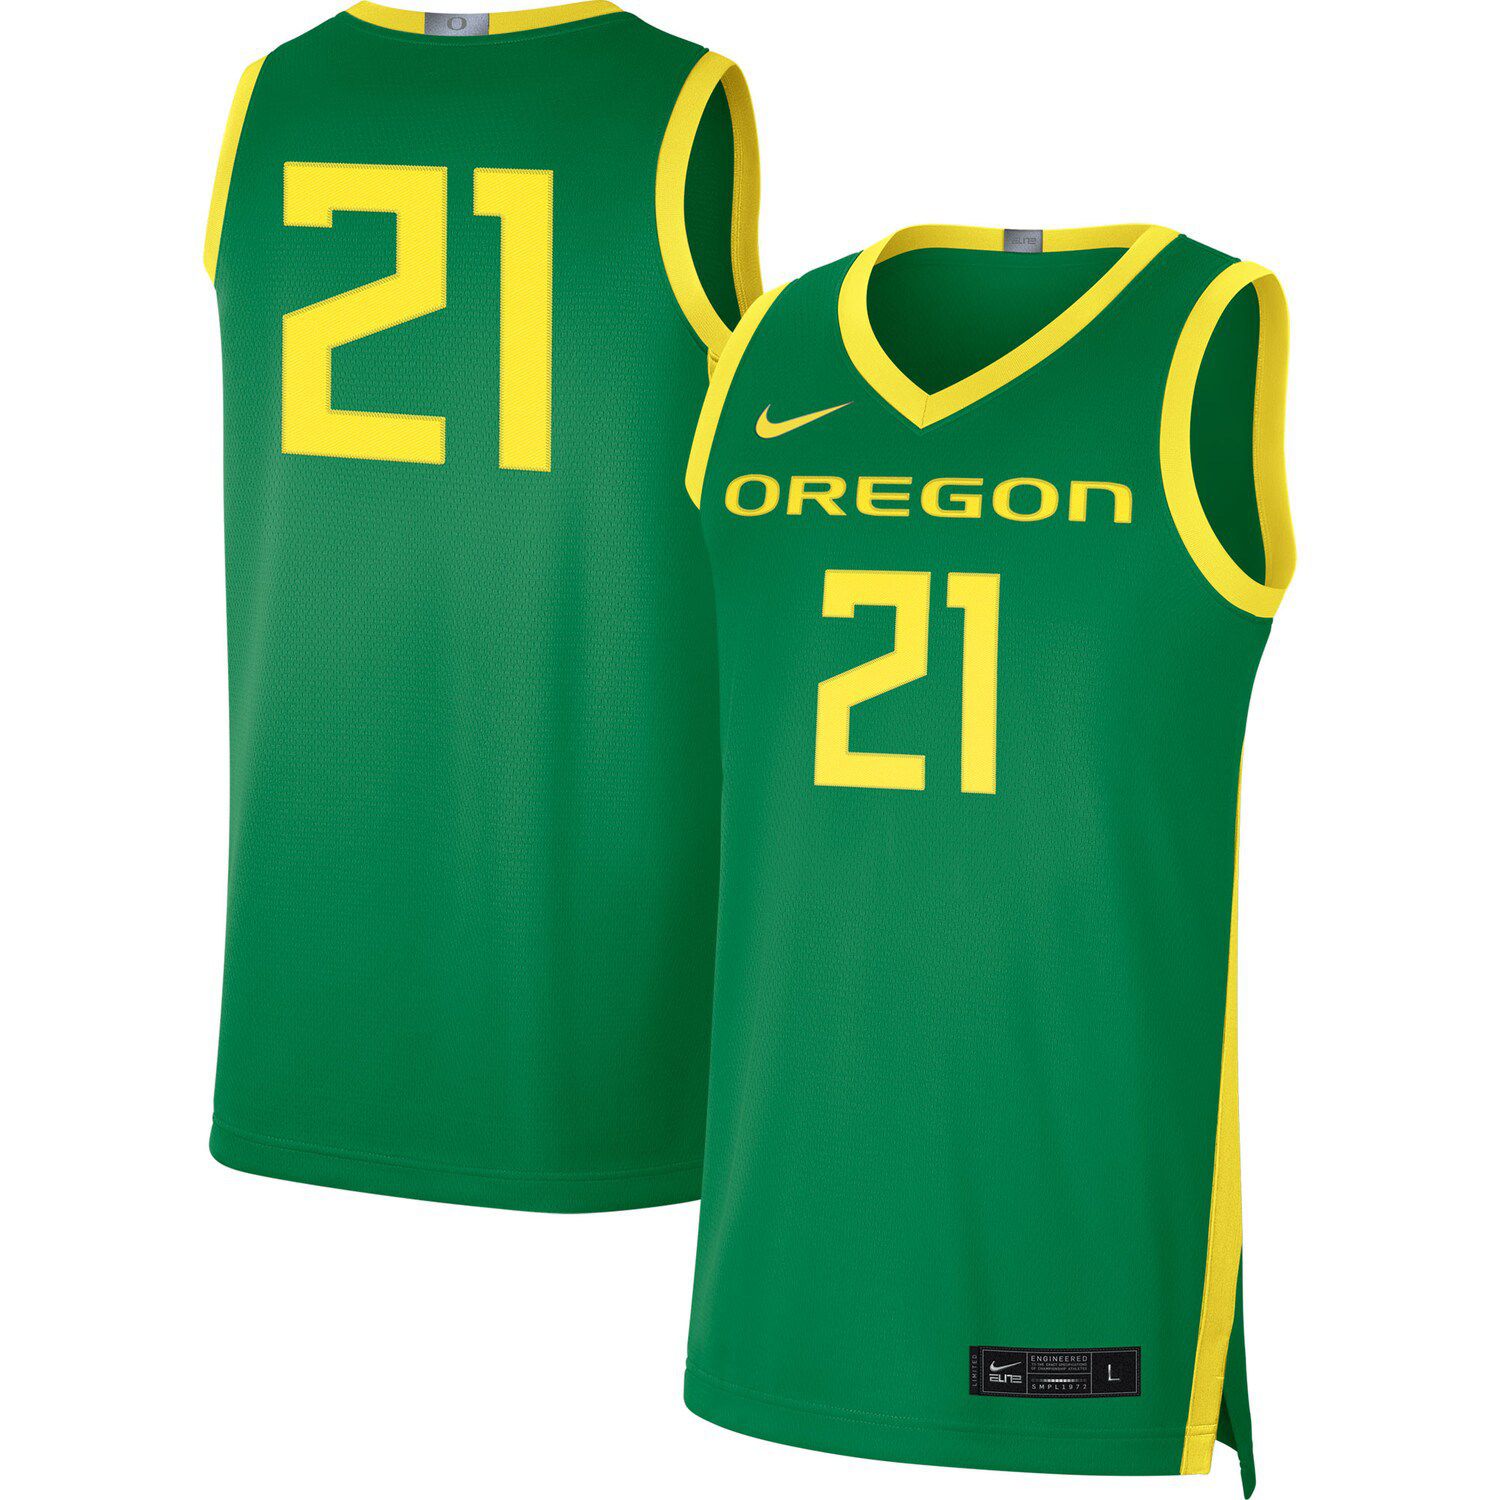 Oregon Ducks NCAA jerseys